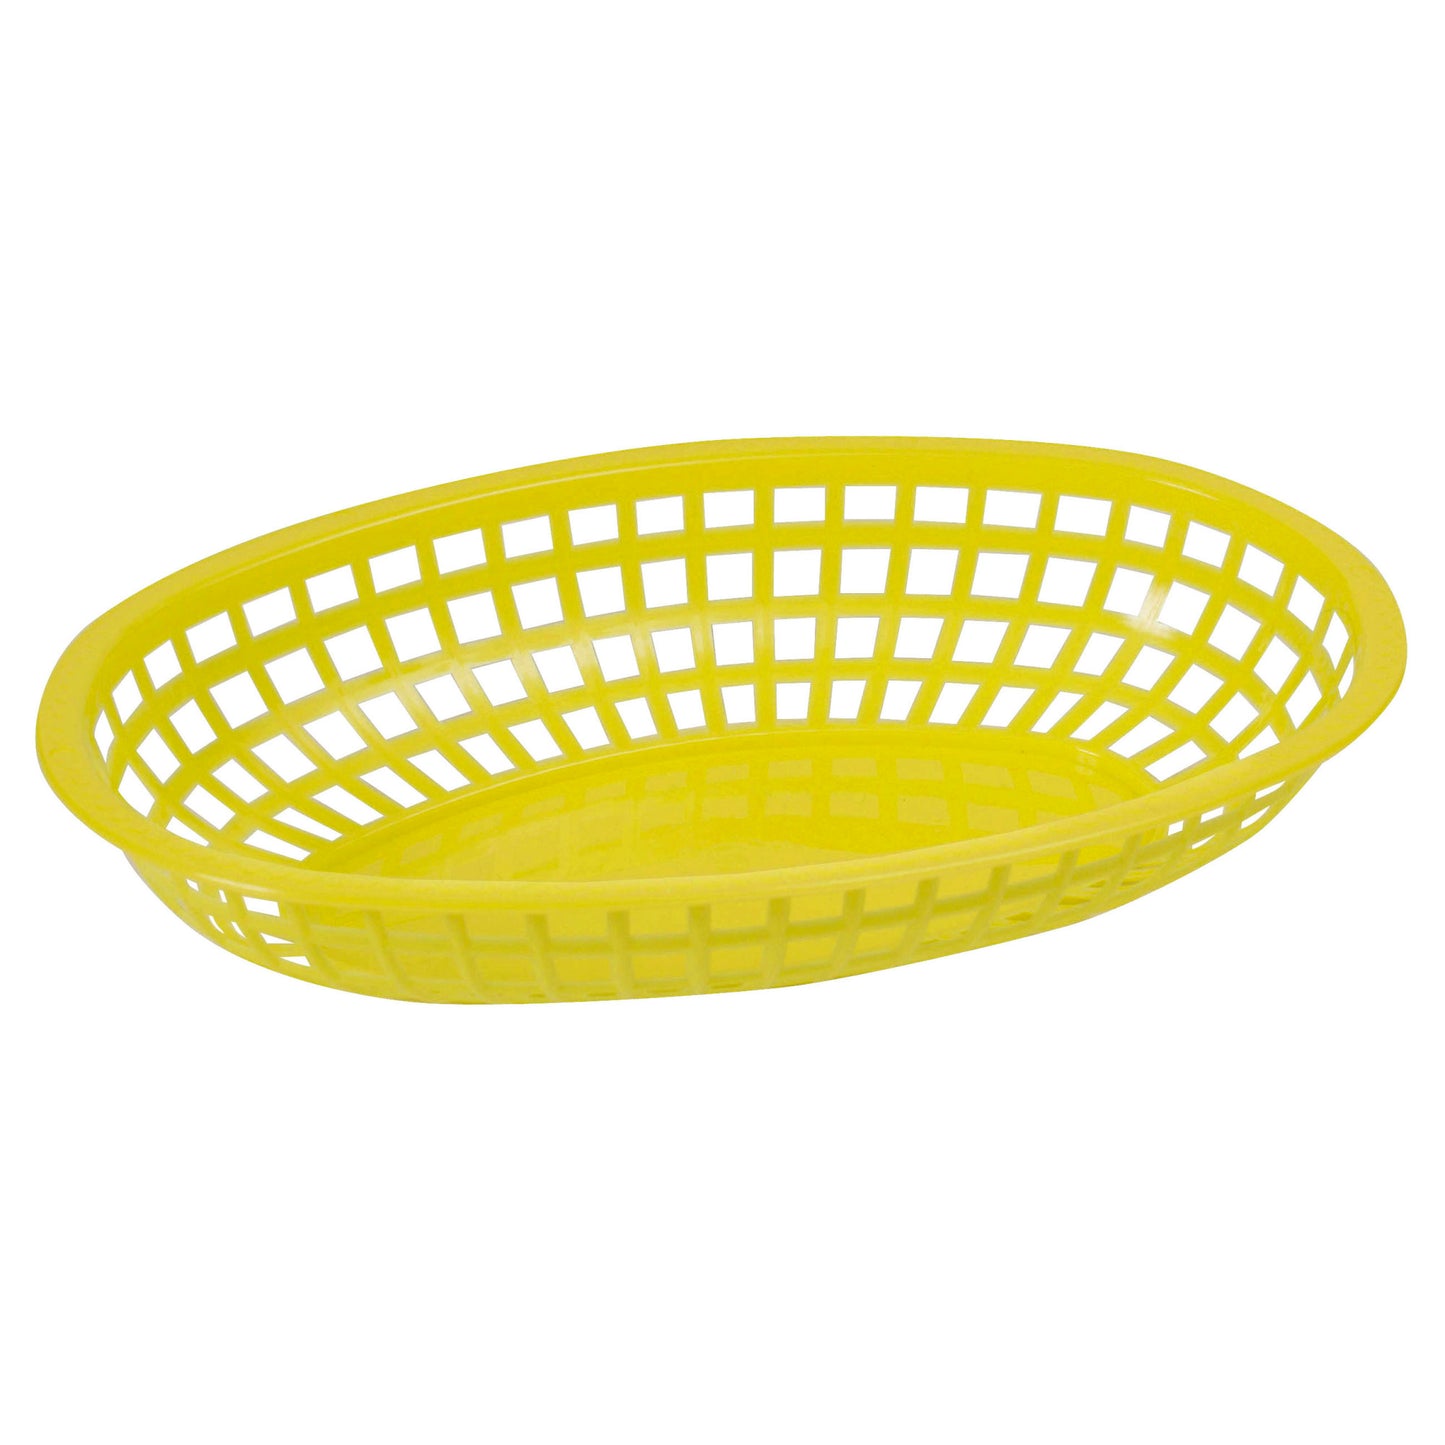 POB-Y - Oval Fast Food Basket, 10-1/4" x 6-3/4" x 2" - Yellow